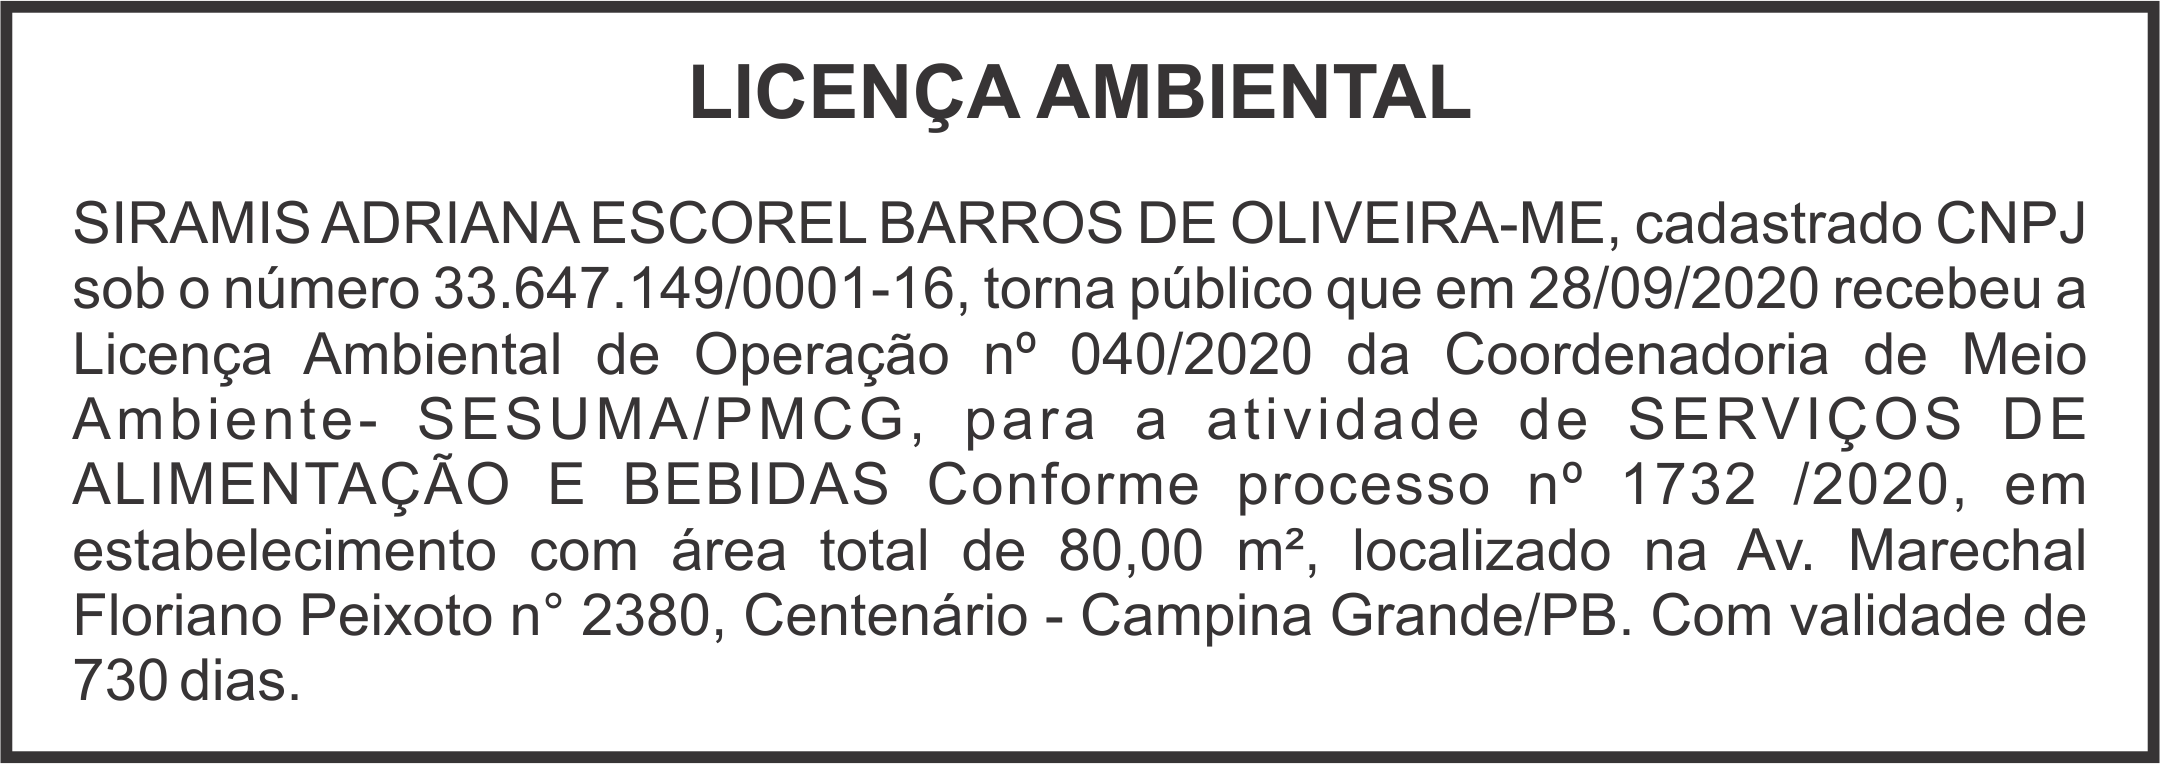 IRAMIS ADRIANA ESCOREL BARROS DE OLIVEIRA-ME – Licença Ambiental de Operação